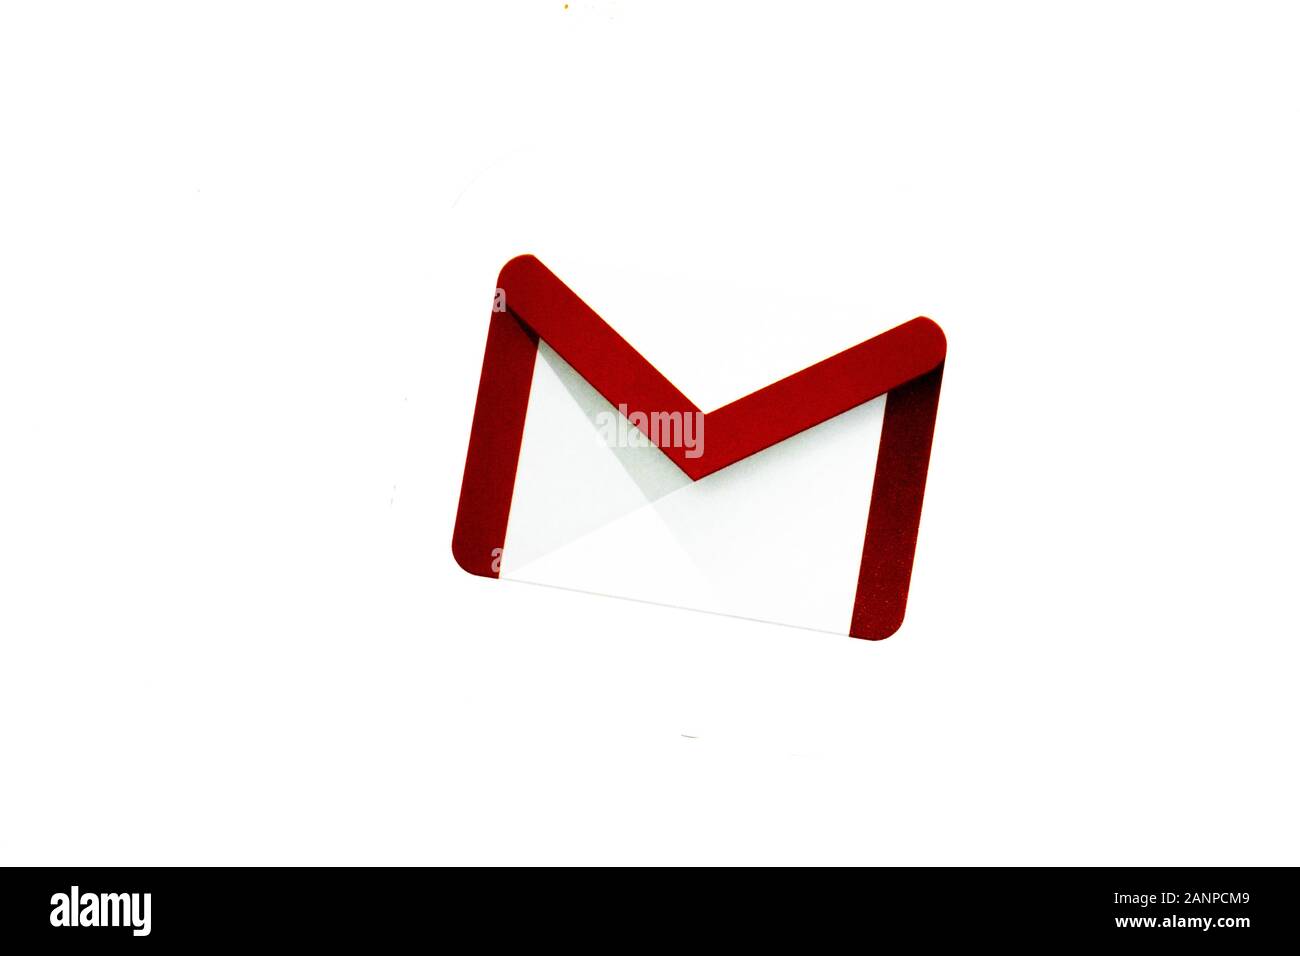 Correo electrónico gmail logo mail sociales medios de comunicación - Iconos  Social Media y Logos